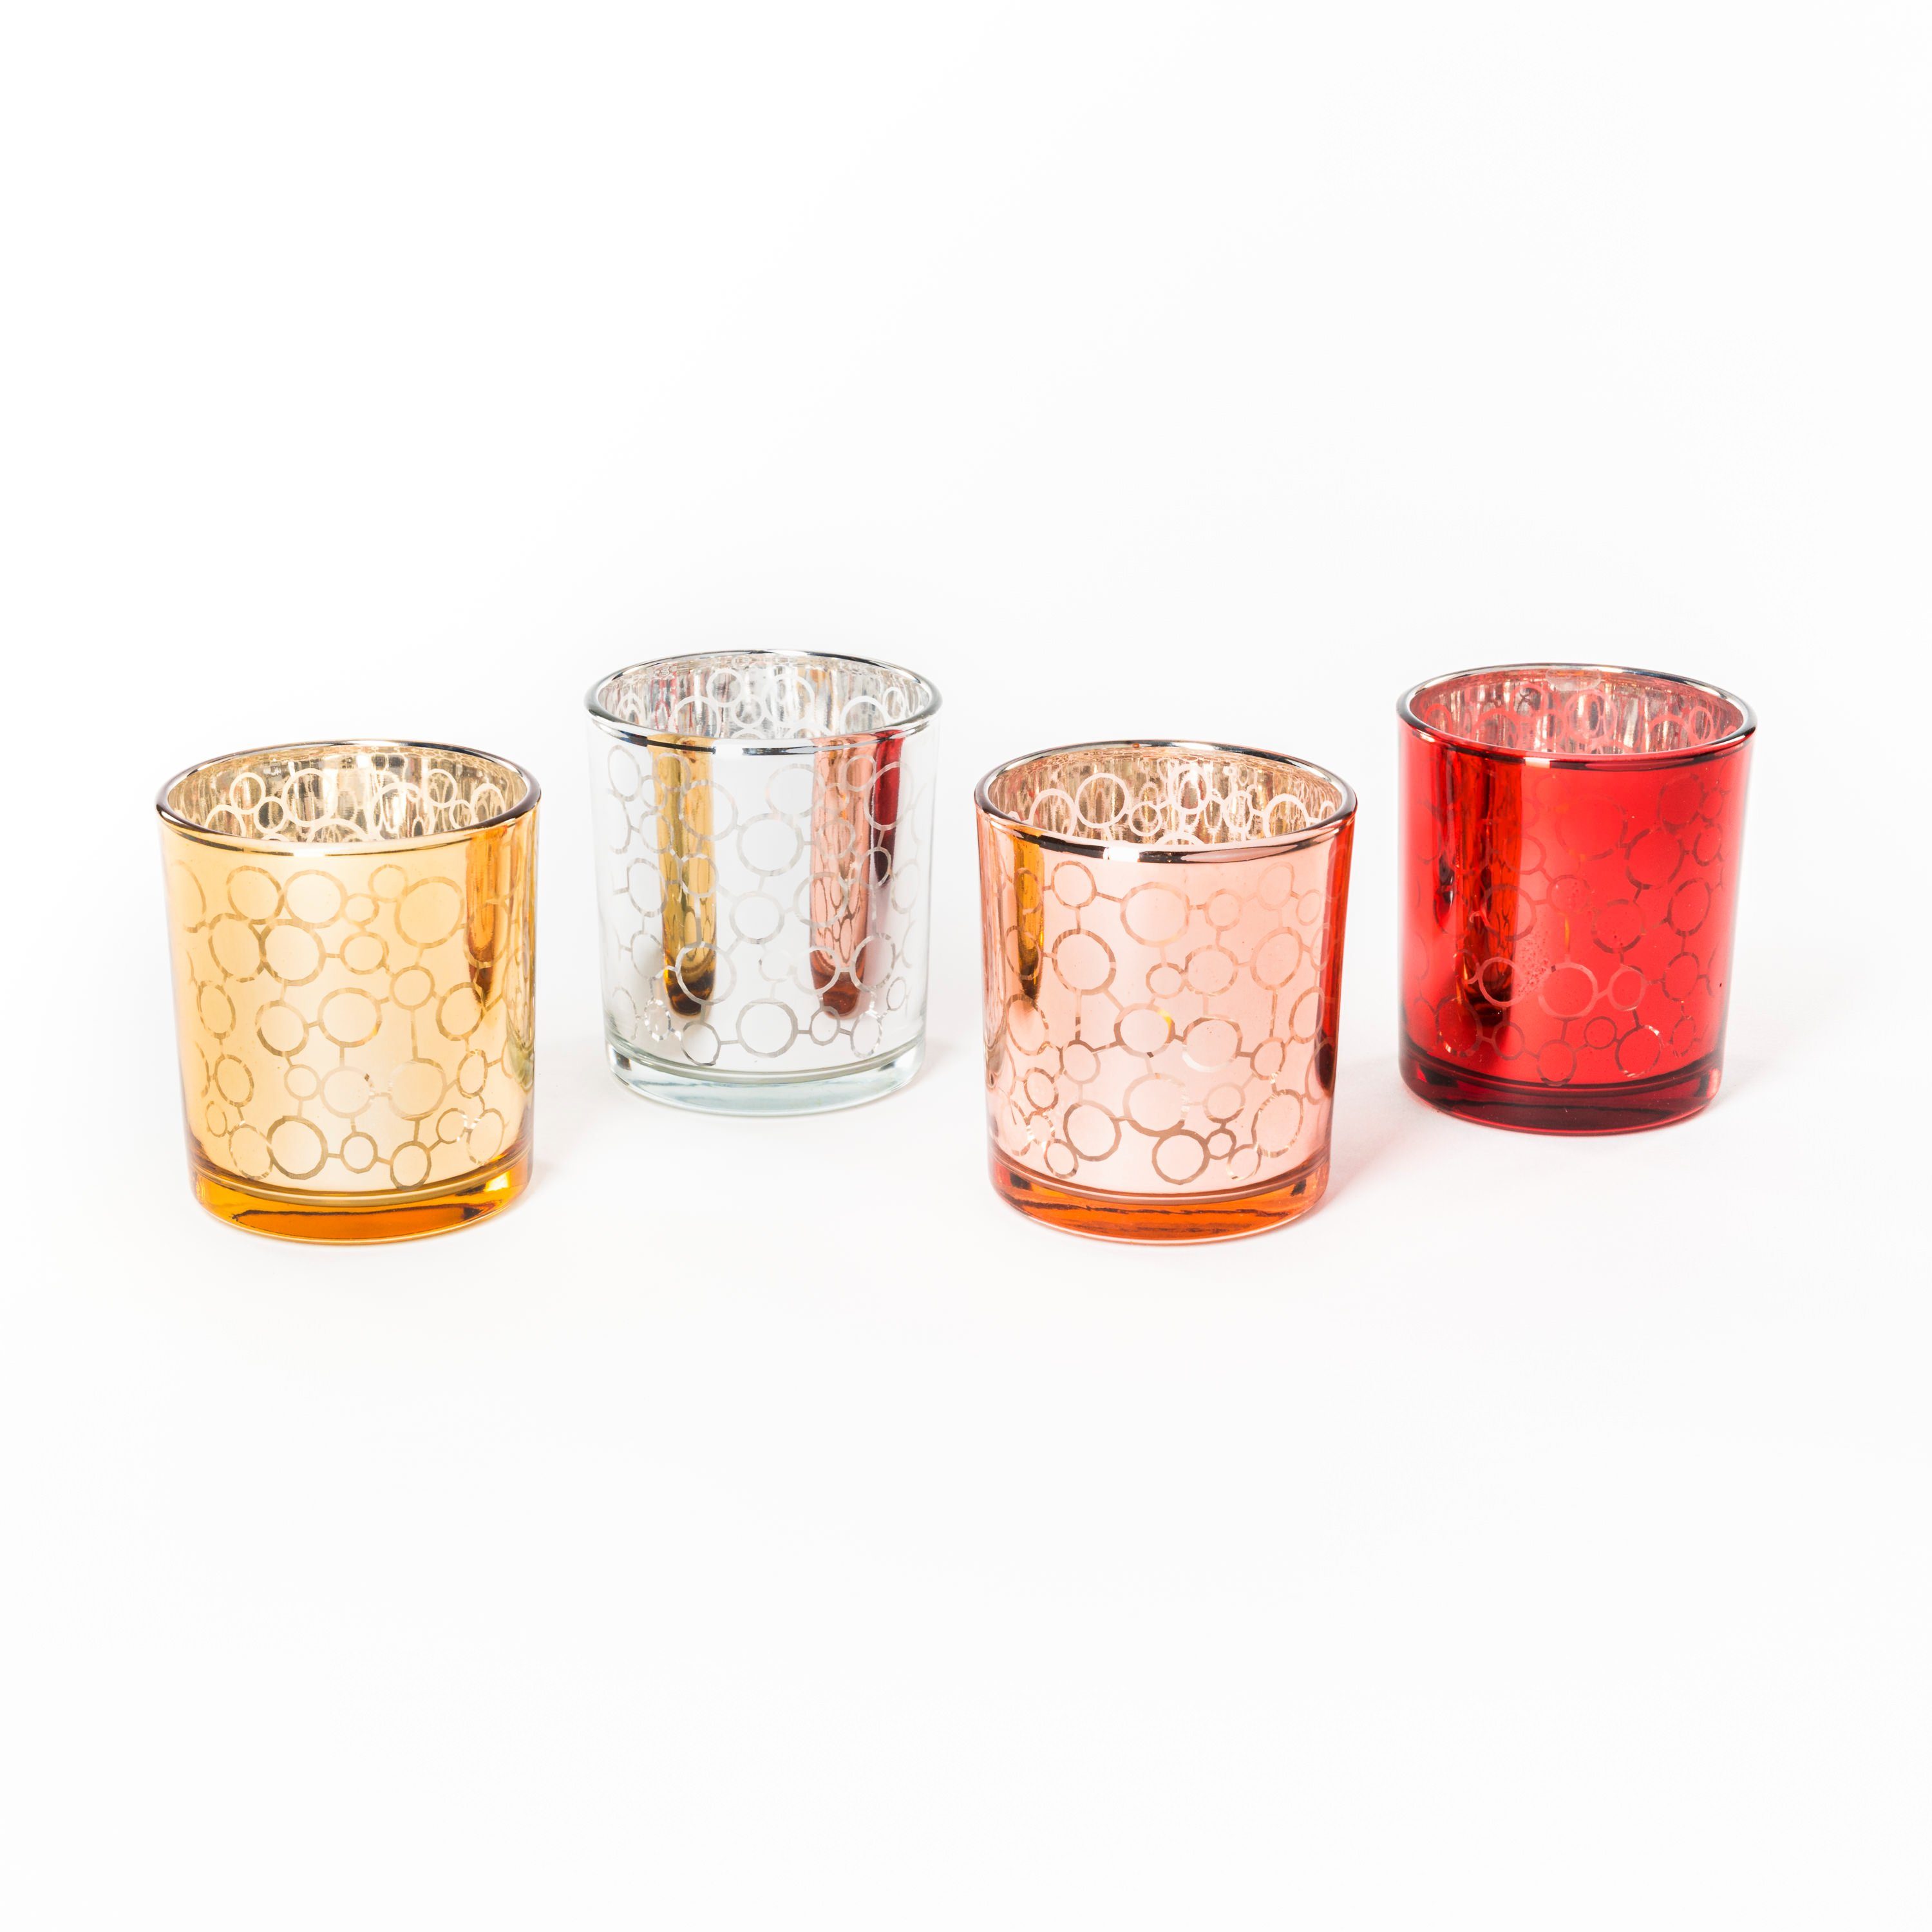 Kerzengläser (4er orientalisches Ornament-Design Glas Set), Flanacom Teelichthalter Design Orientalische -